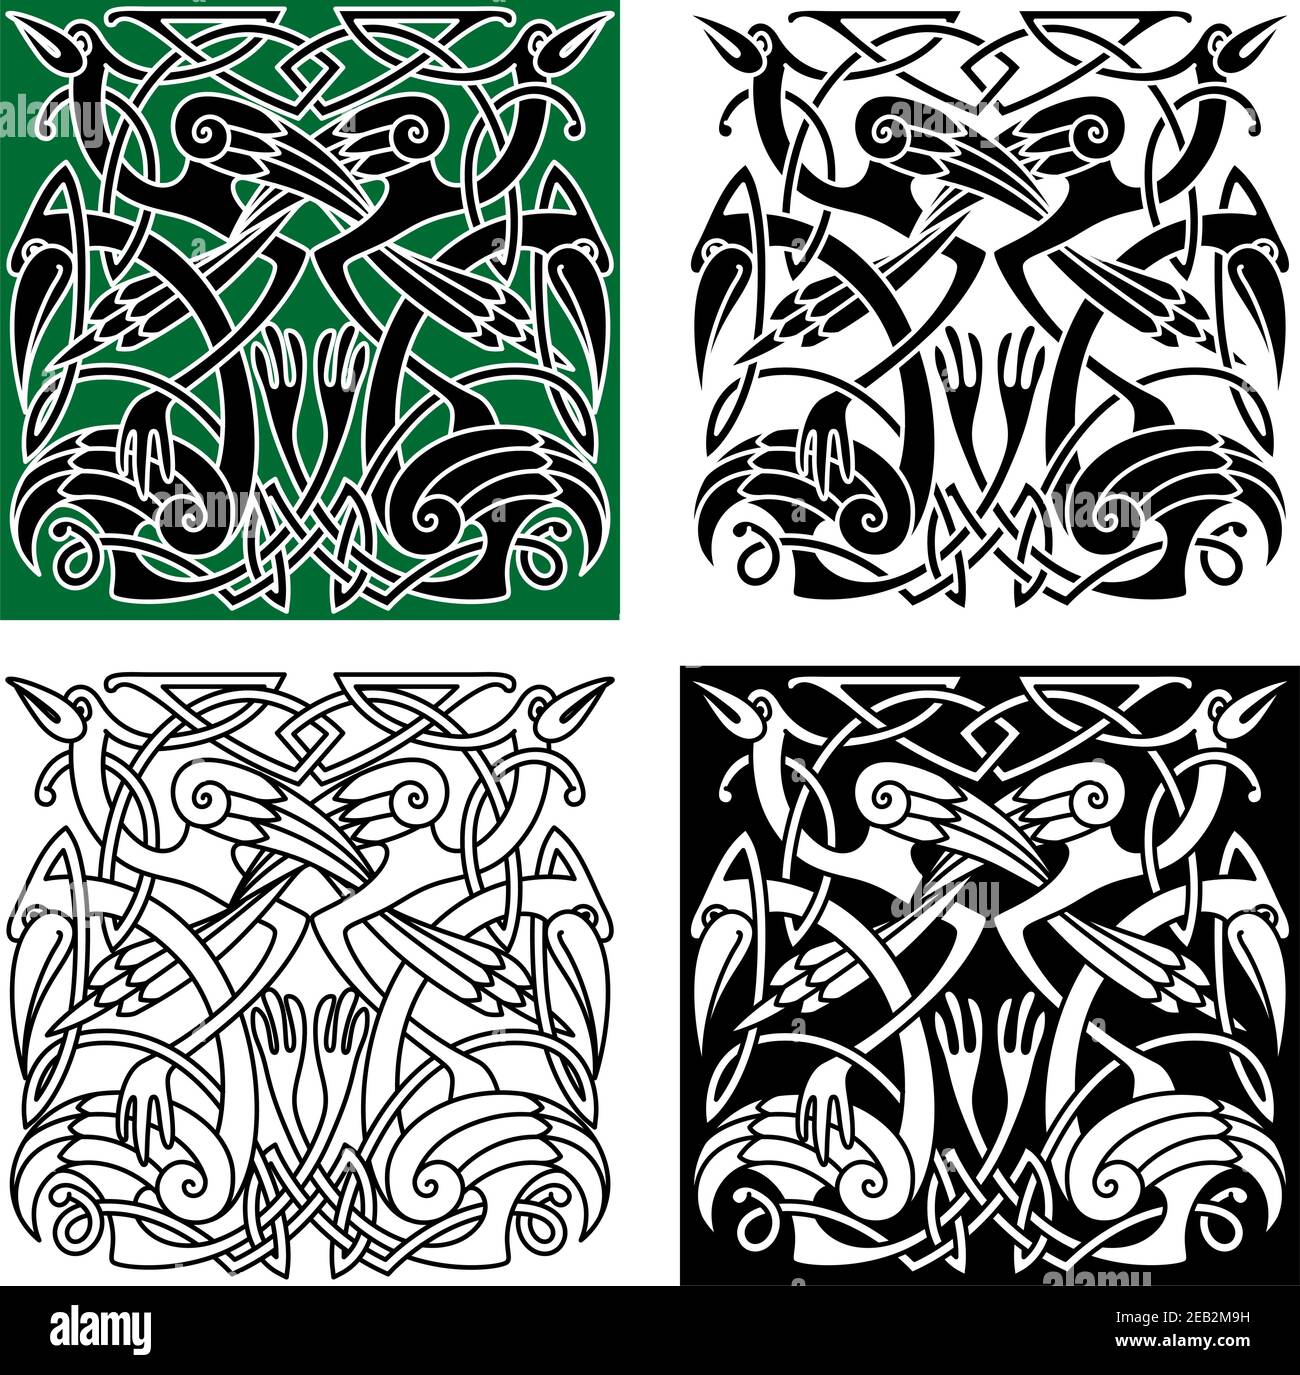 Alte keltische Vögel Symbole mit Tribal stilisierten Reiher oder Störche, verziert mit traditionellen irischen Ornament. Für Tattoo oder heraldry Design Stock Vektor